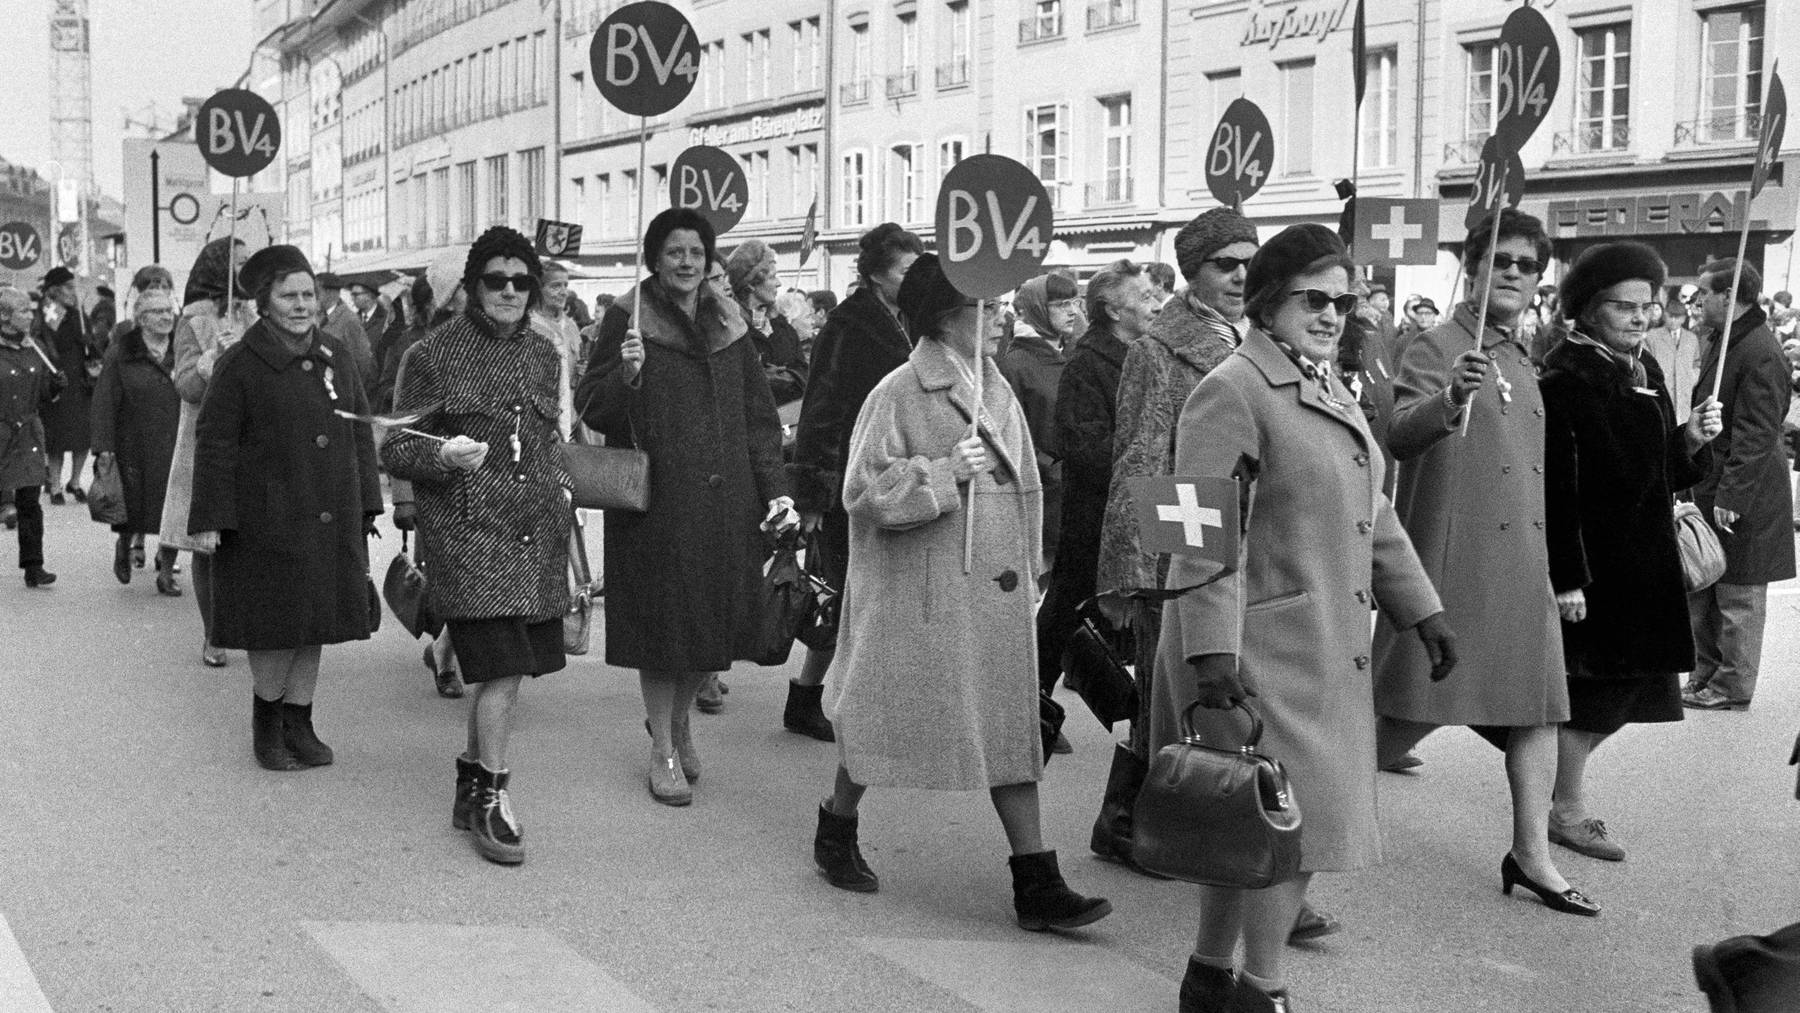 Die Schweizerinnen mussten Jahrzehntelang für ihr Stimmrecht kämpfen – im Bild der «Marsch auf Bern» mit 5000 Frauen im Jahr 1969.